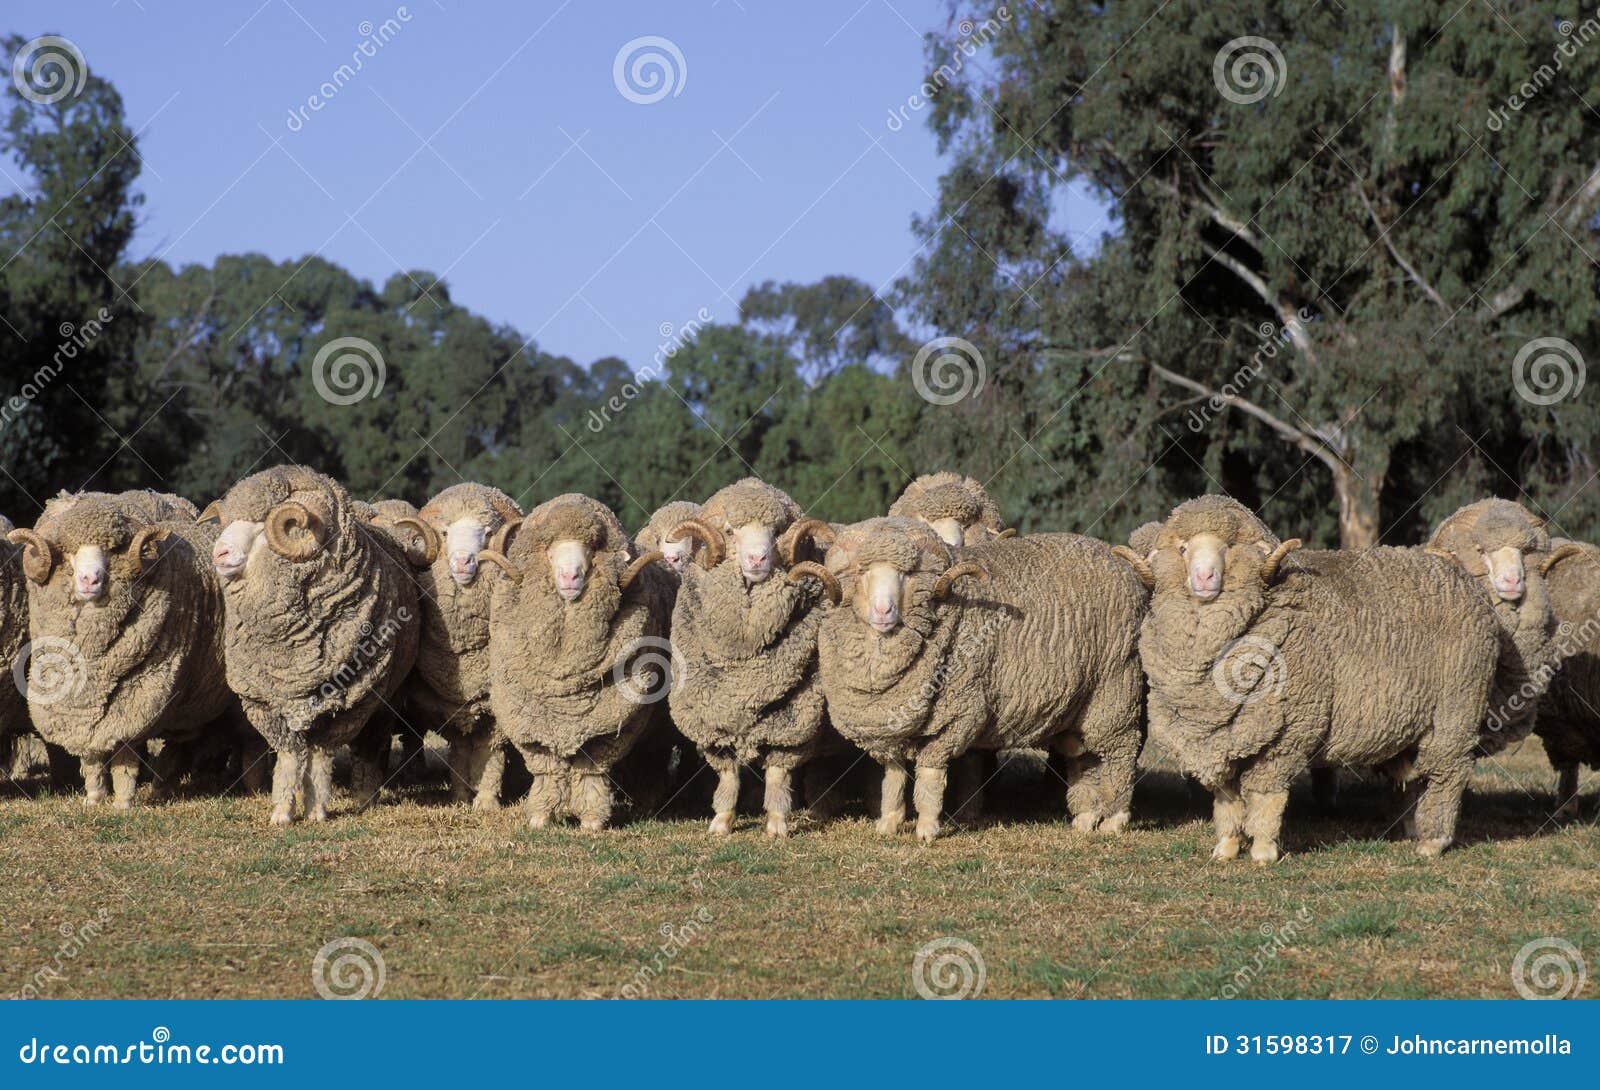 merino sheep